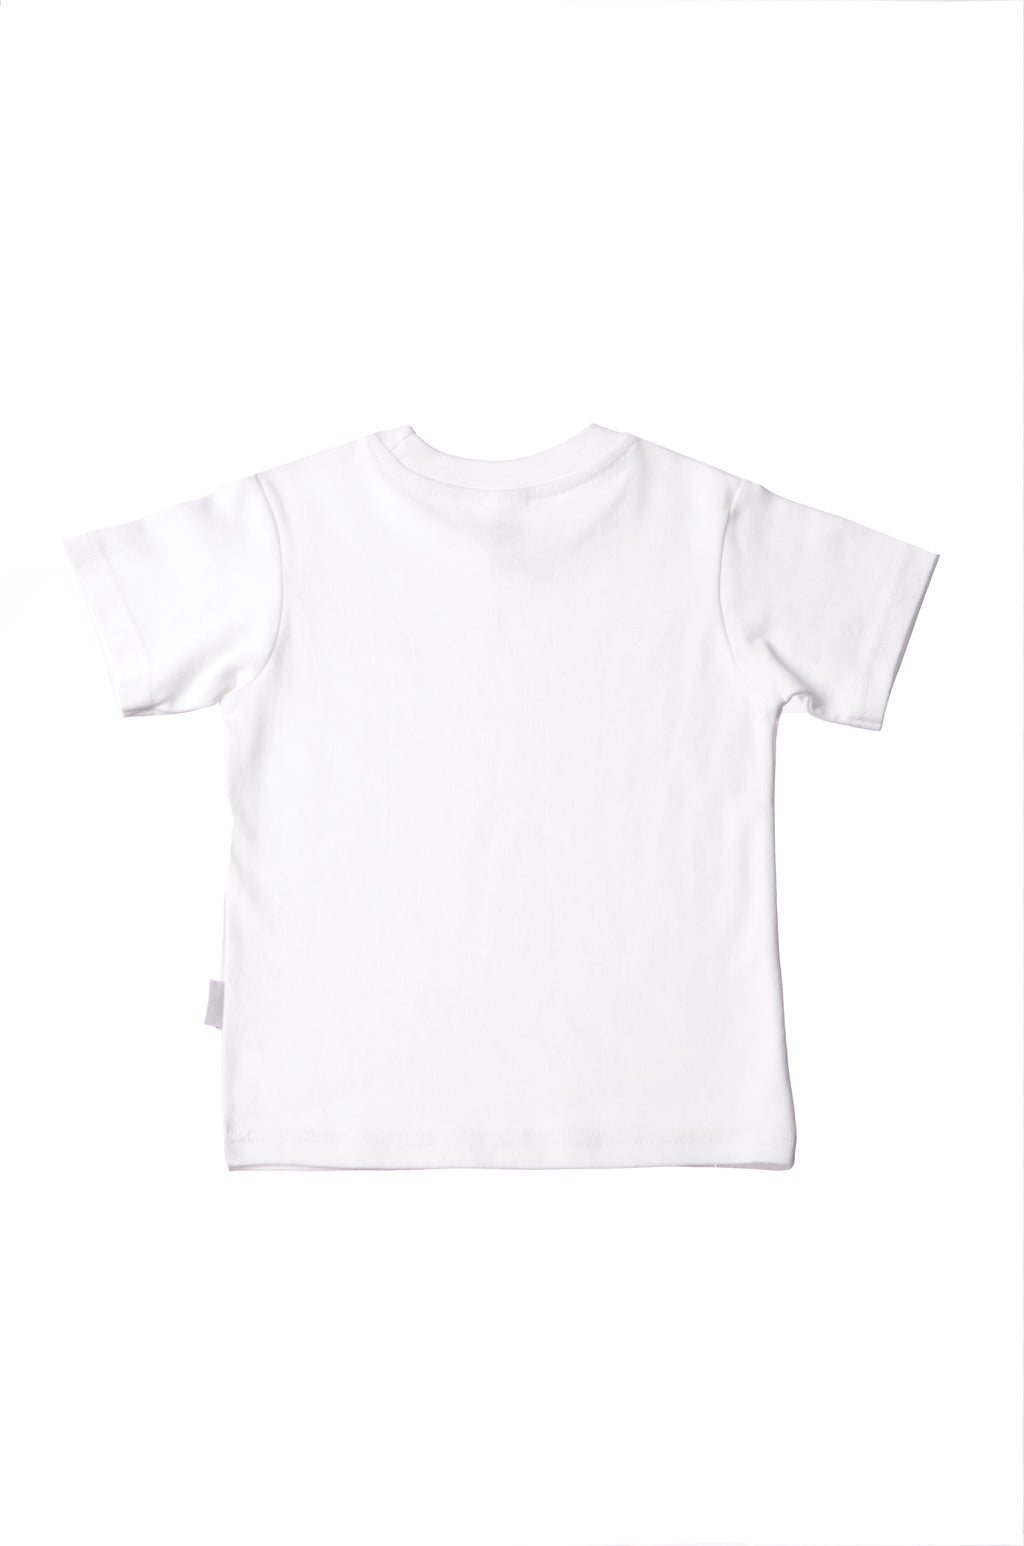 T-Shirt für von Liliput und Kleinkind Baby – Liliput